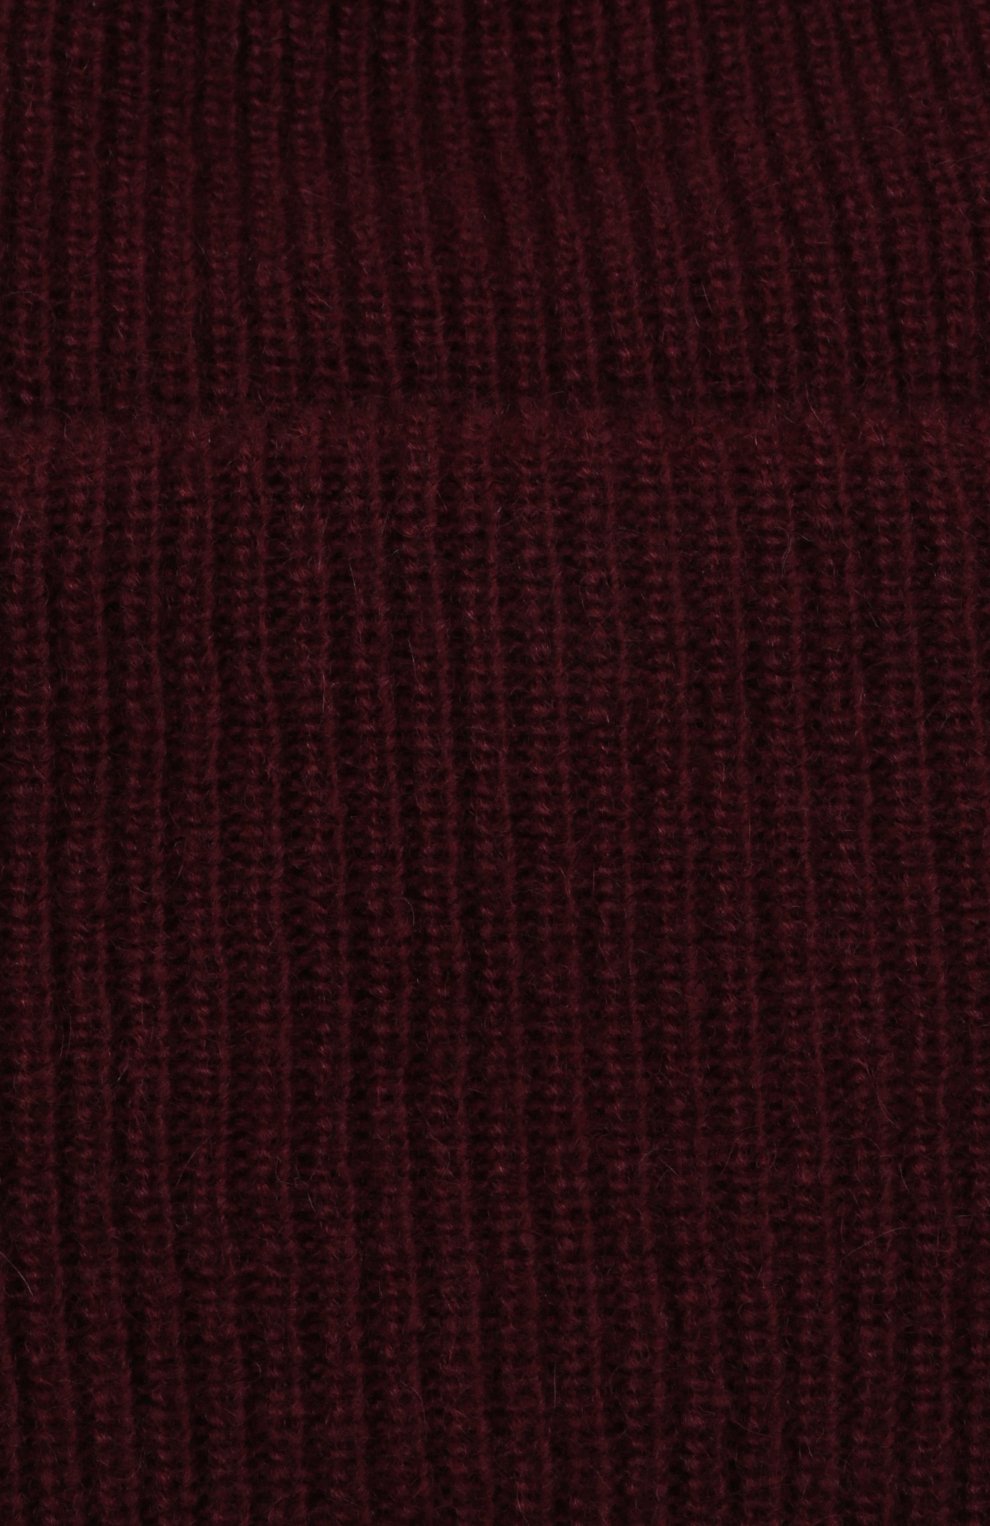 Женская шапка из шерсти и кашемира INVERNI бордового цвета, арт. 5364 CM | Фото 4 (Материал: Текстиль, Кашемир, Шерсть)